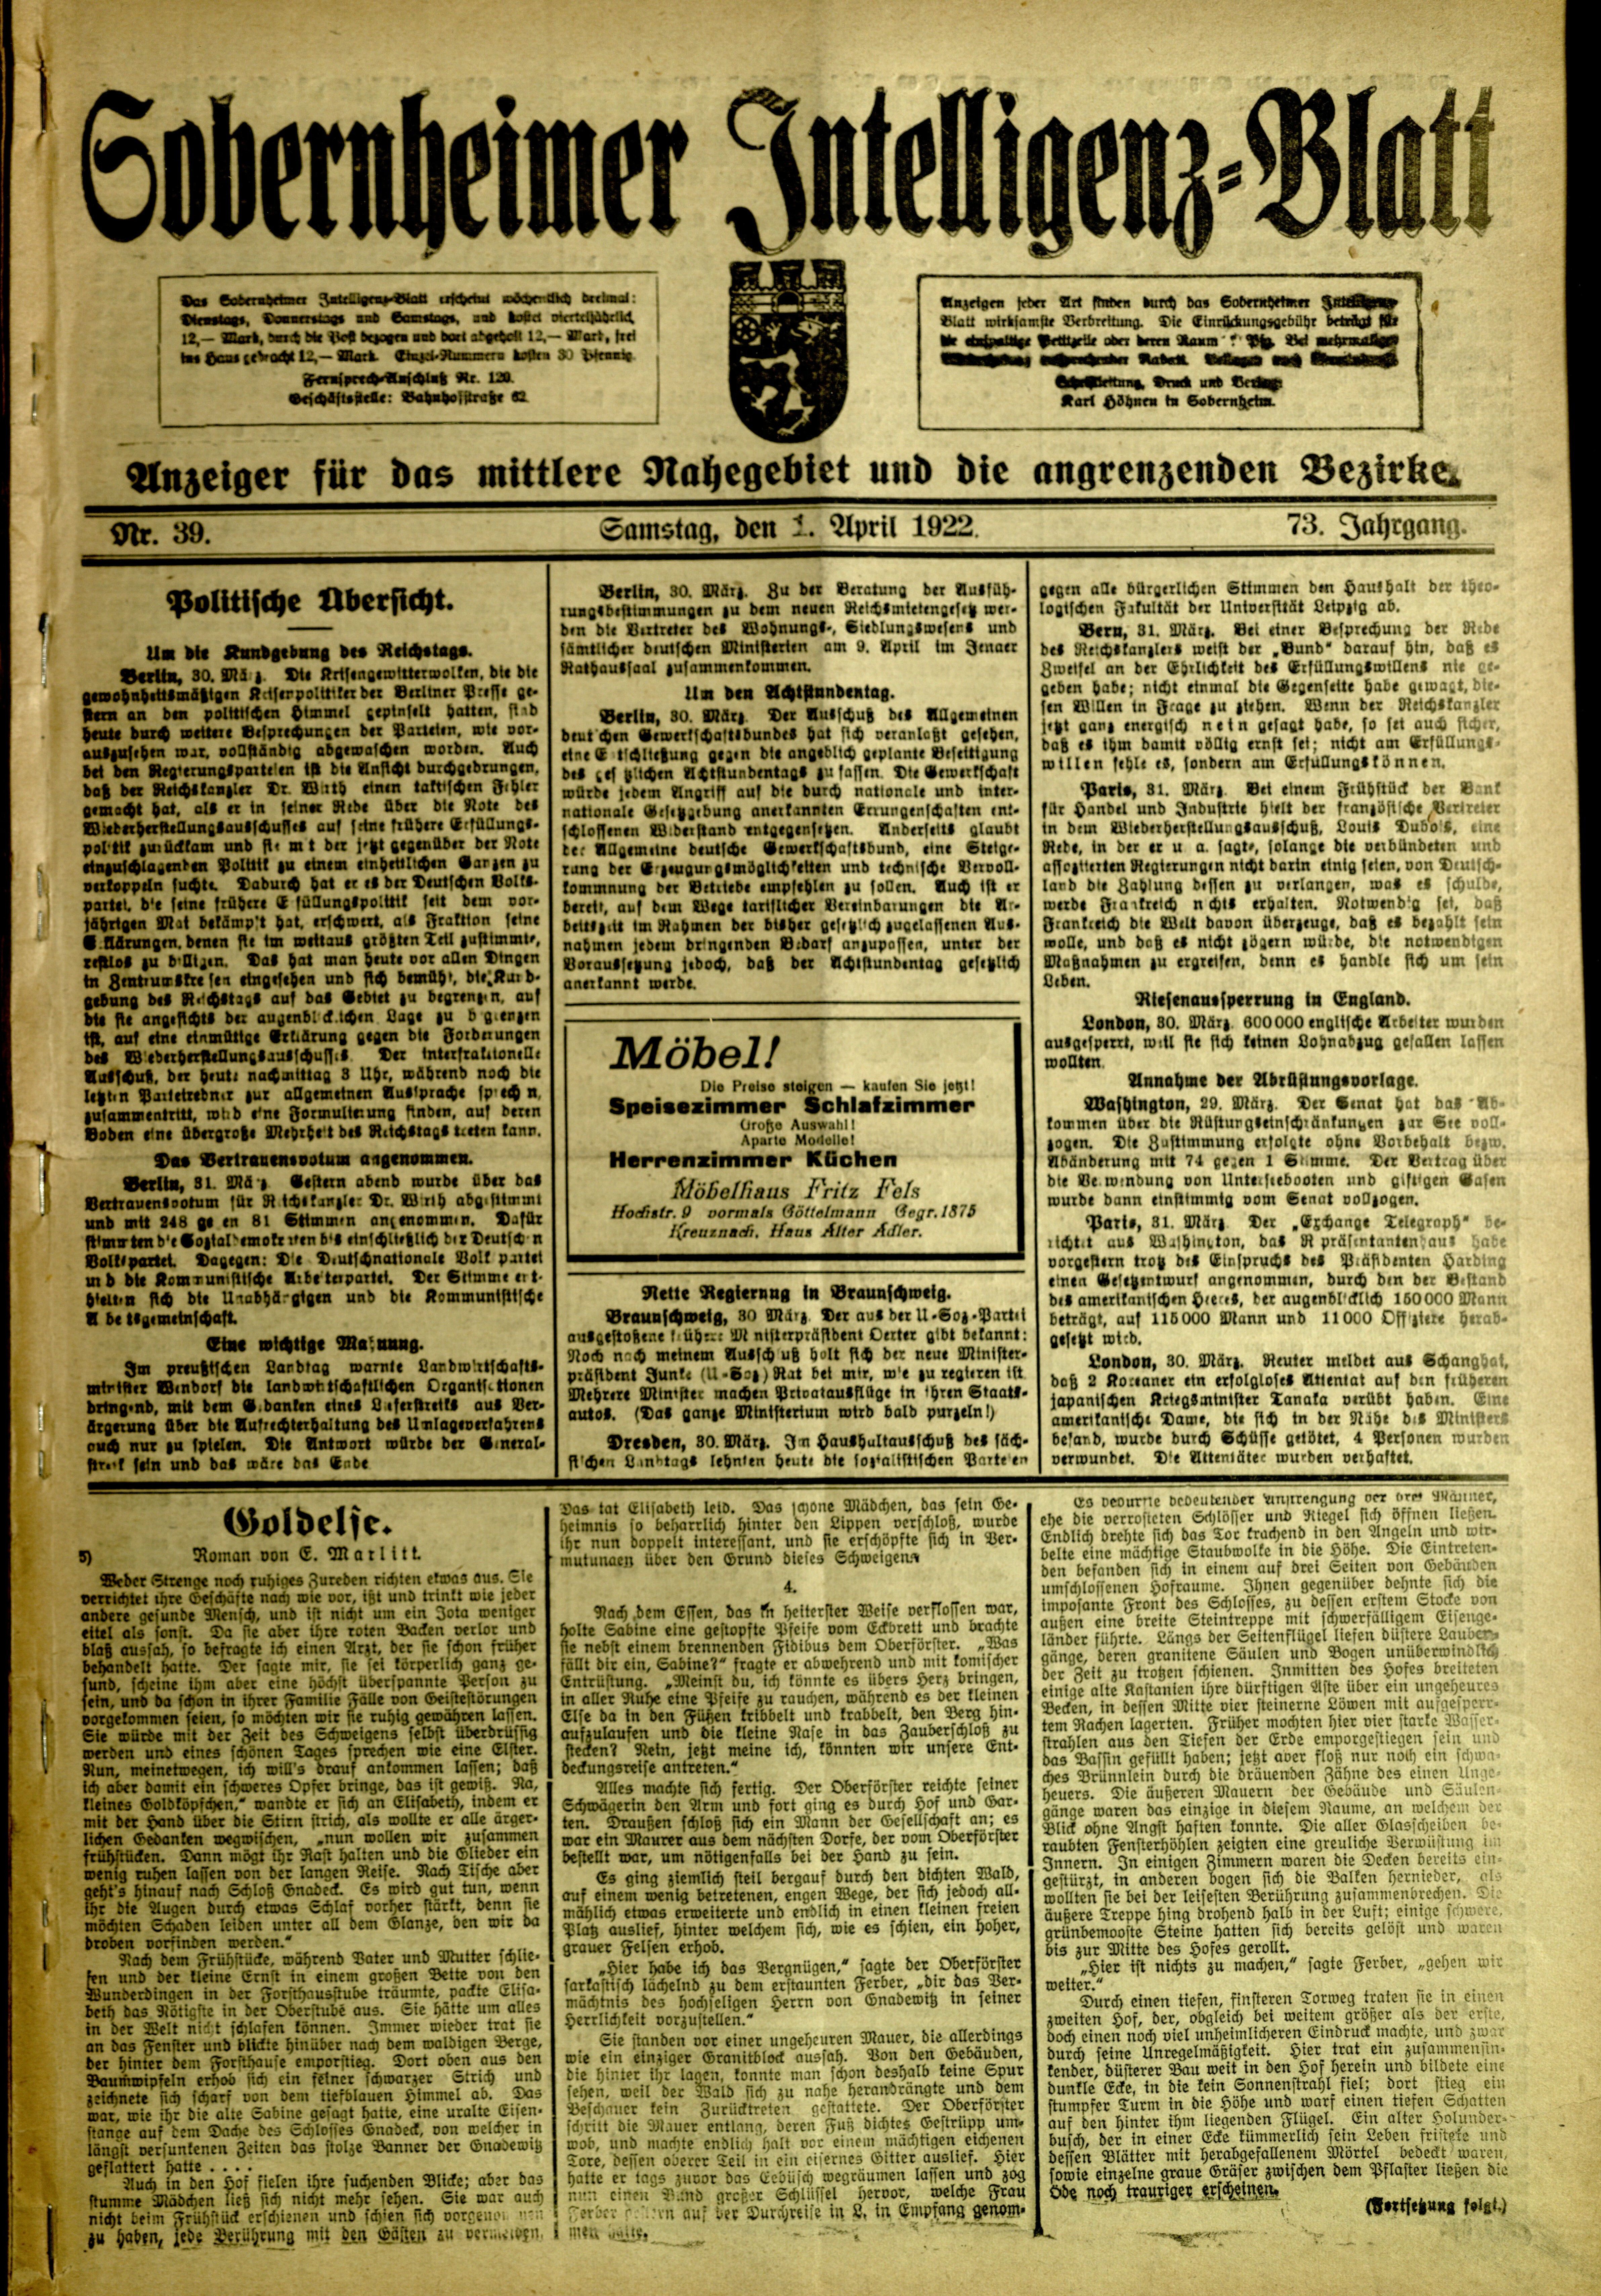 Zeitung: Sobernheimer Intelligenzblatt; April 1922, Jg. 73 Nr. 39 (Heimatmuseum Bad Sobernheim CC BY-NC-SA)